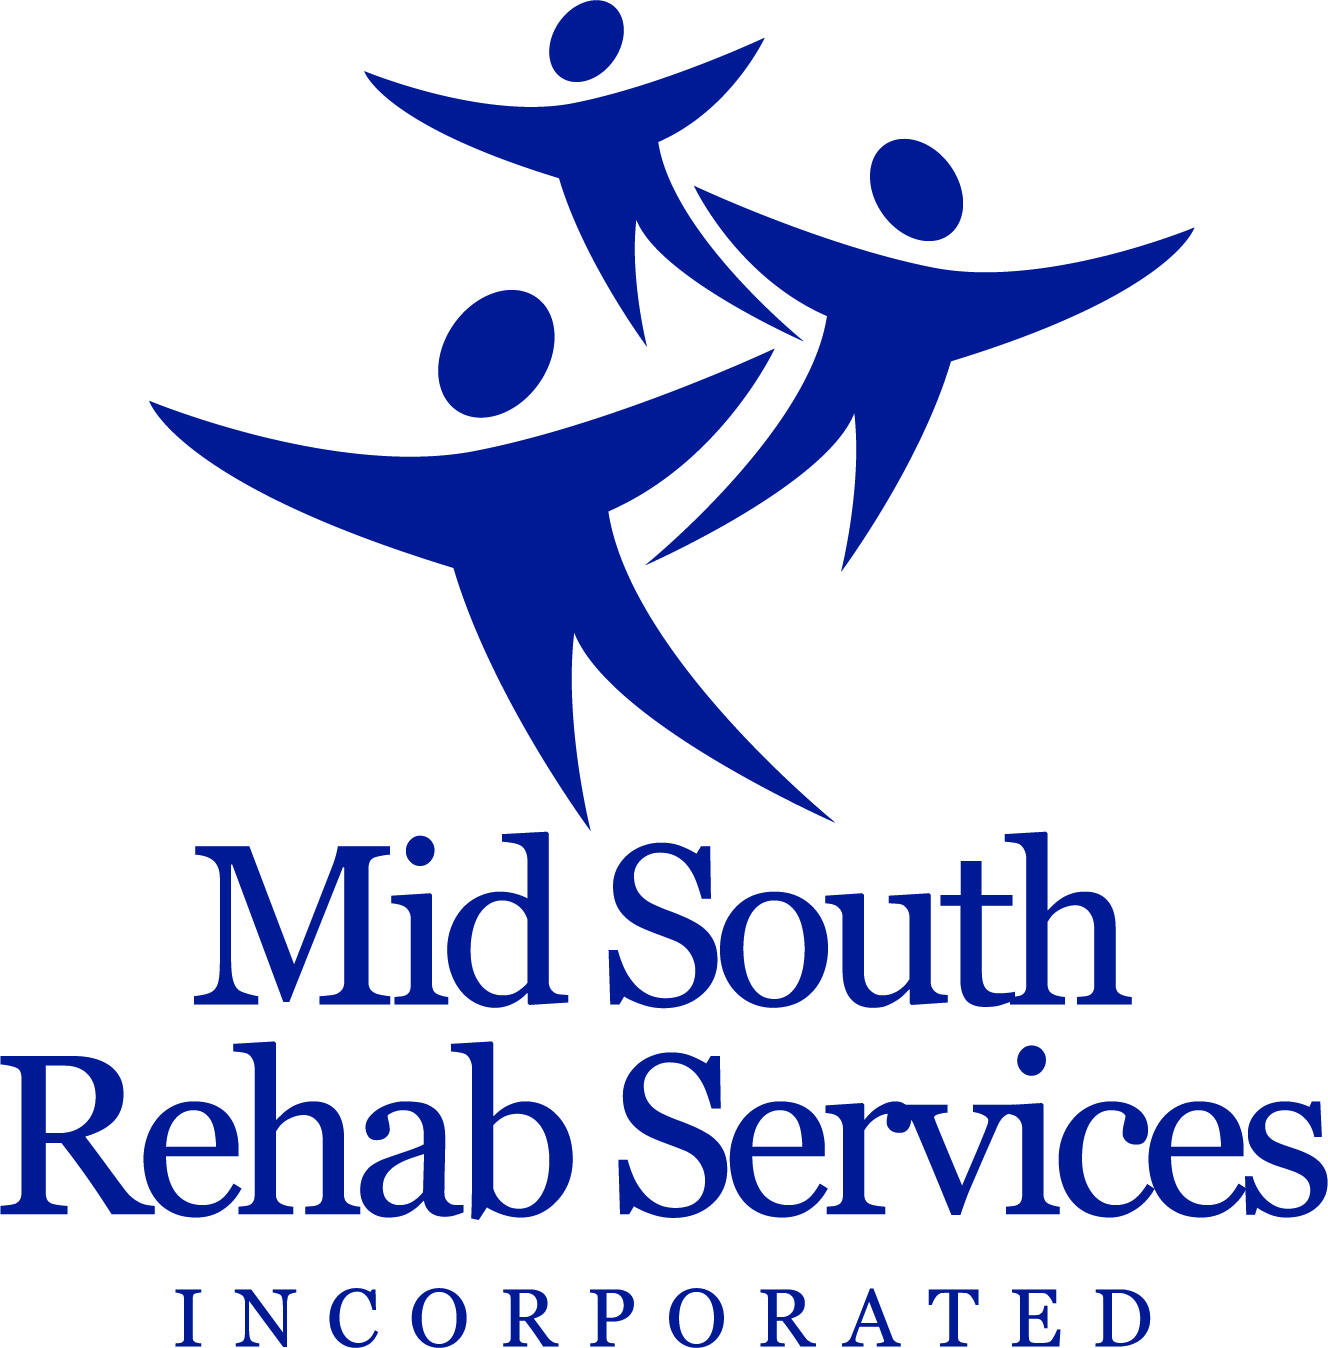 D. Servicios de rehabilitación de Midsouth (Nivel 4)